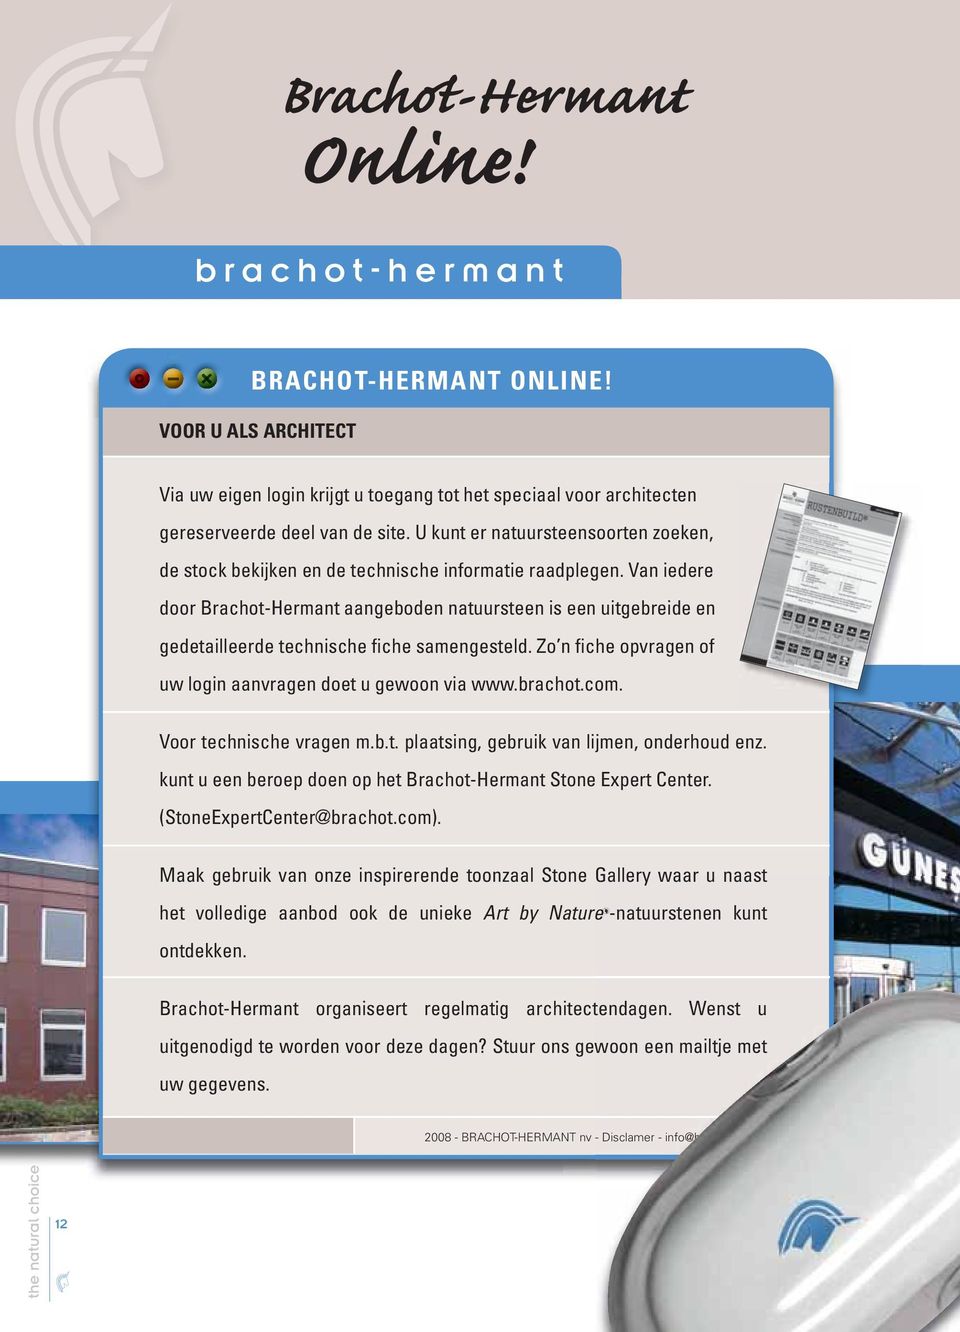 Van iedere door Brachot-Hermant aangeboden natuursteen is een uitgebreide en gedetailleerde technische fiche samengesteld. Zo n fiche opvragen of uw login aanvragen doet u gewoon via www.brachot.com.